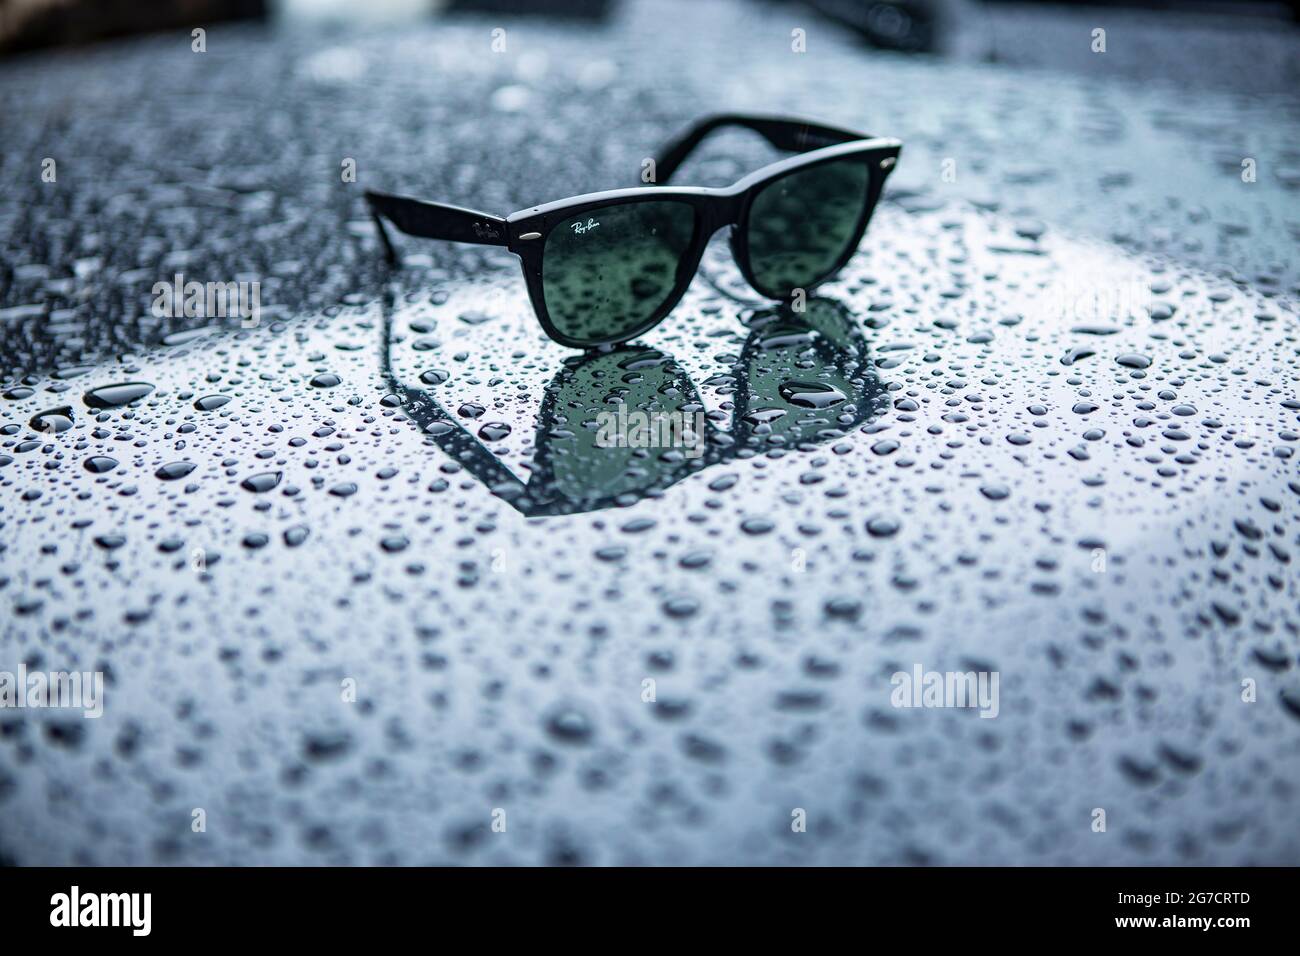 Ray Ban Wayfarer Sonnenbrille mit Regentropfen. Symboldbild Wetter, Sommer, Regenwetter, Regen Stock Photo